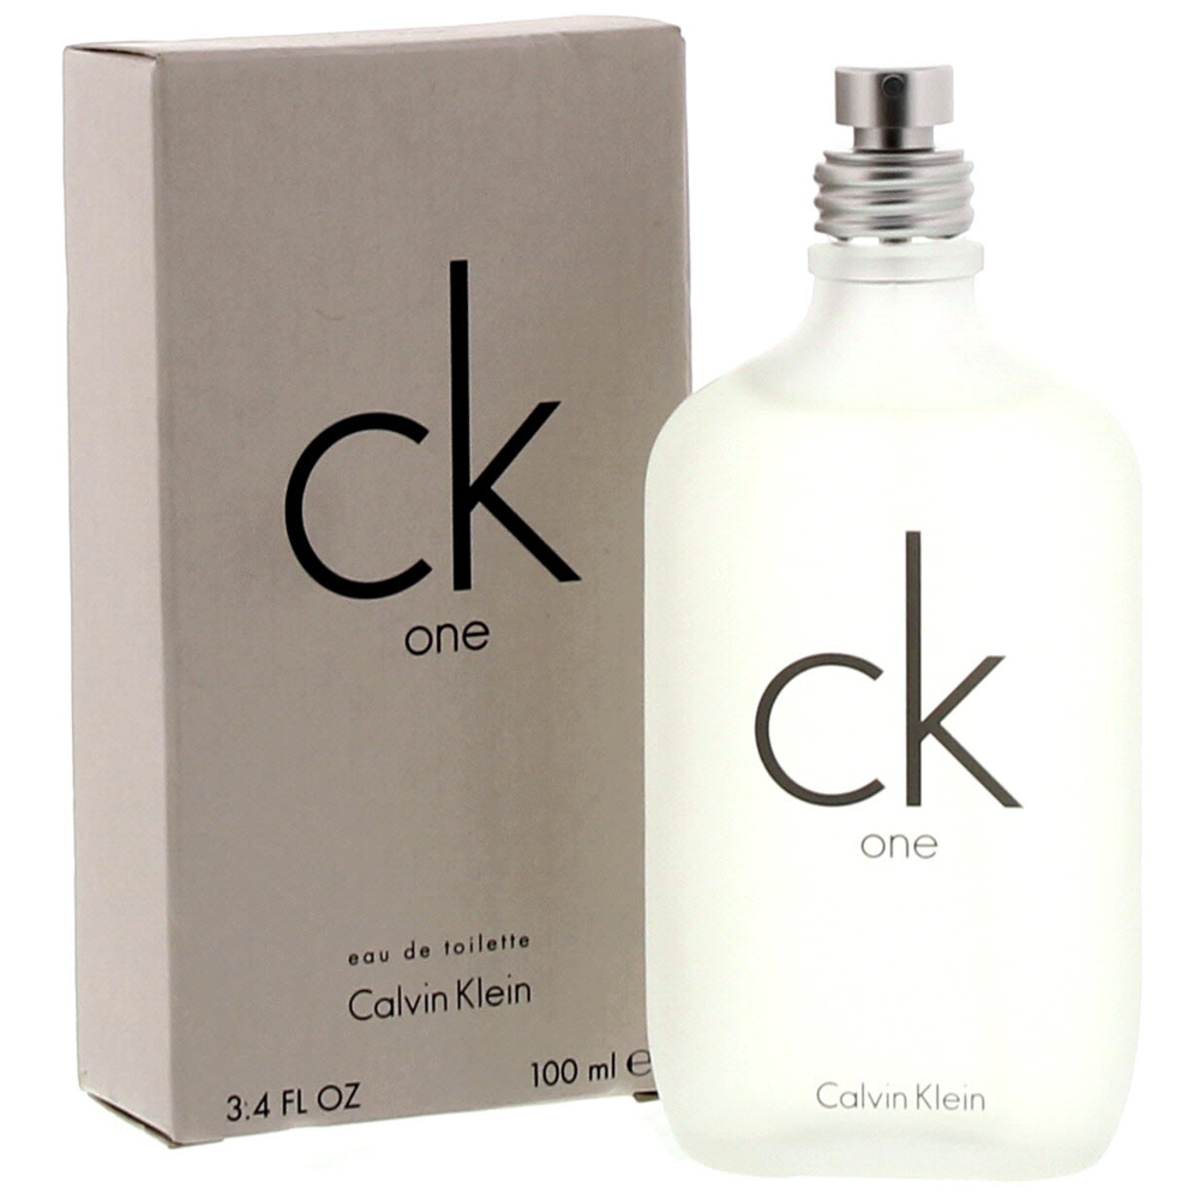 De controle krijgen stromen echtgenoot Calvin Klein One EDT 100 ml Online at Best Price | Premium Perfumes | Lulu  KSA